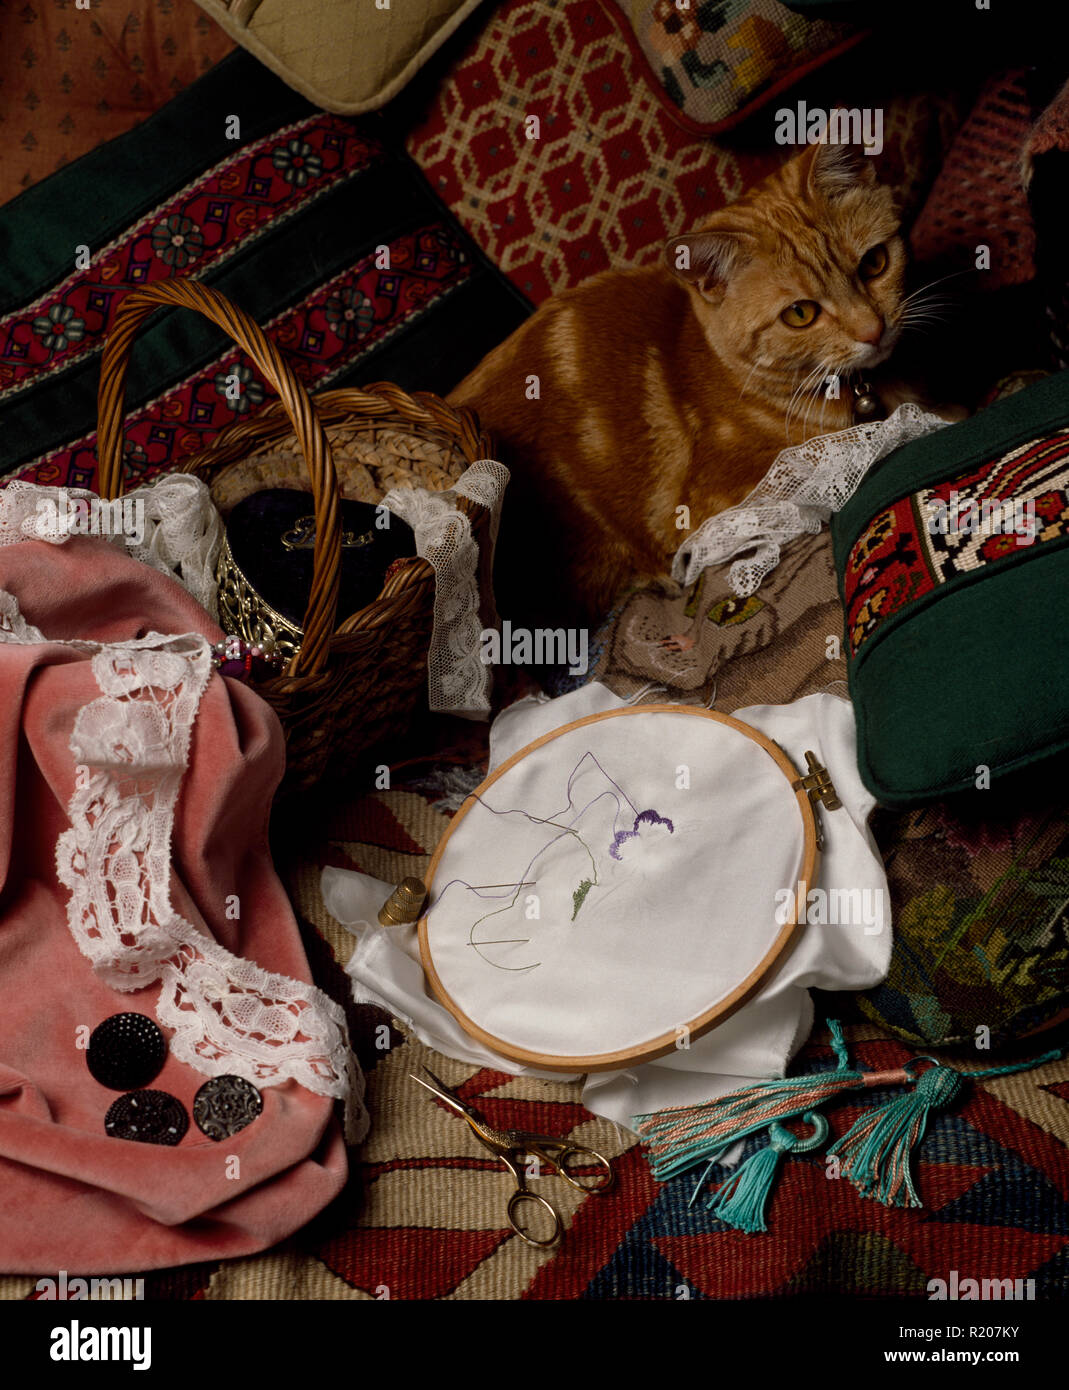 Le gingembre cat assis parmi le matériel de couture Banque D'Images